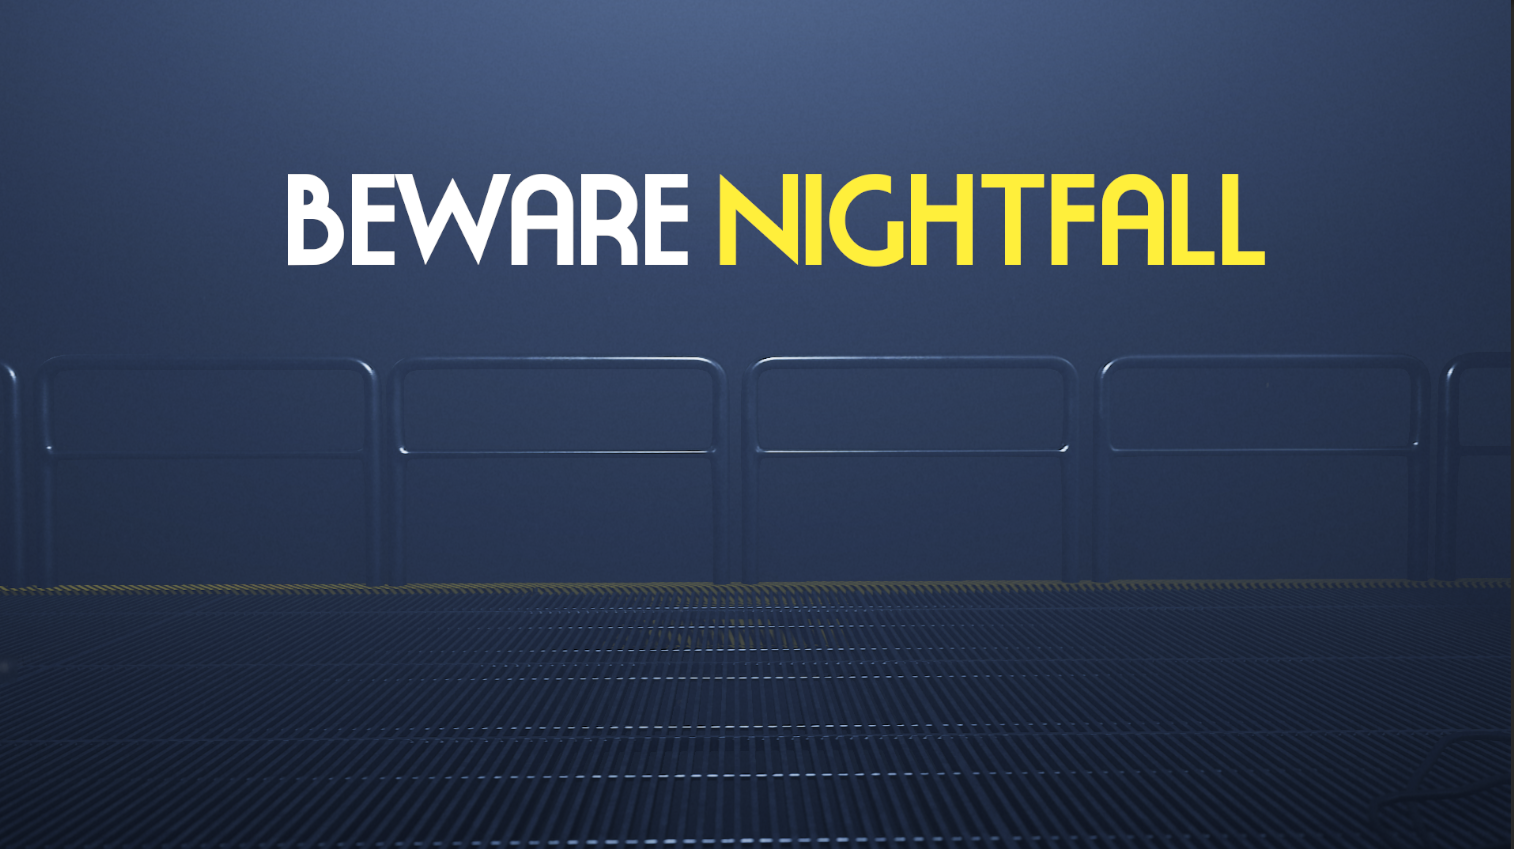 Beware Nightfall